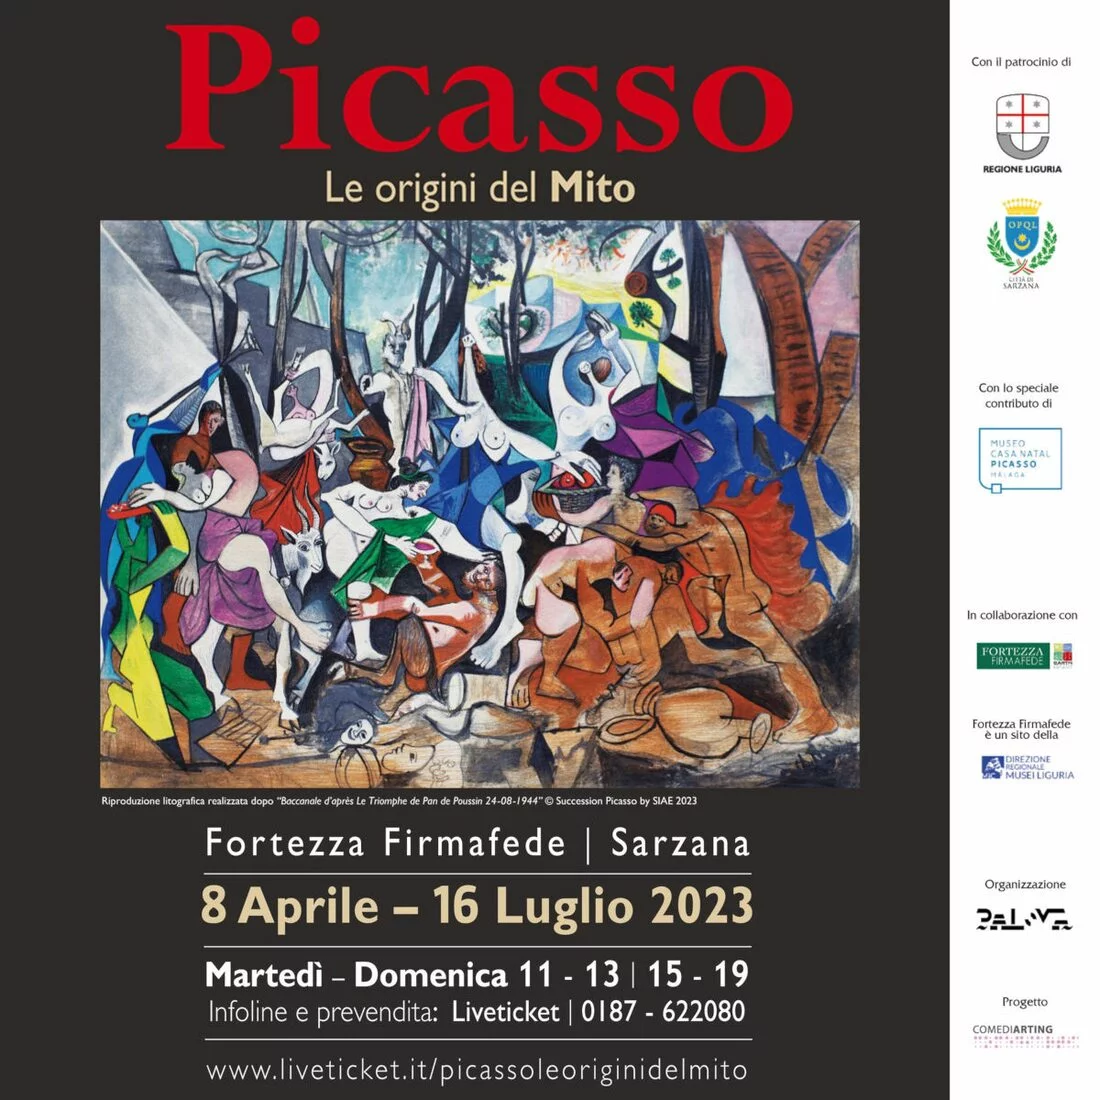 Picasso. Le origini del Mito - Mostra Arte moderna in Liguria - Sarzana (SP), Fortezza Firmafede